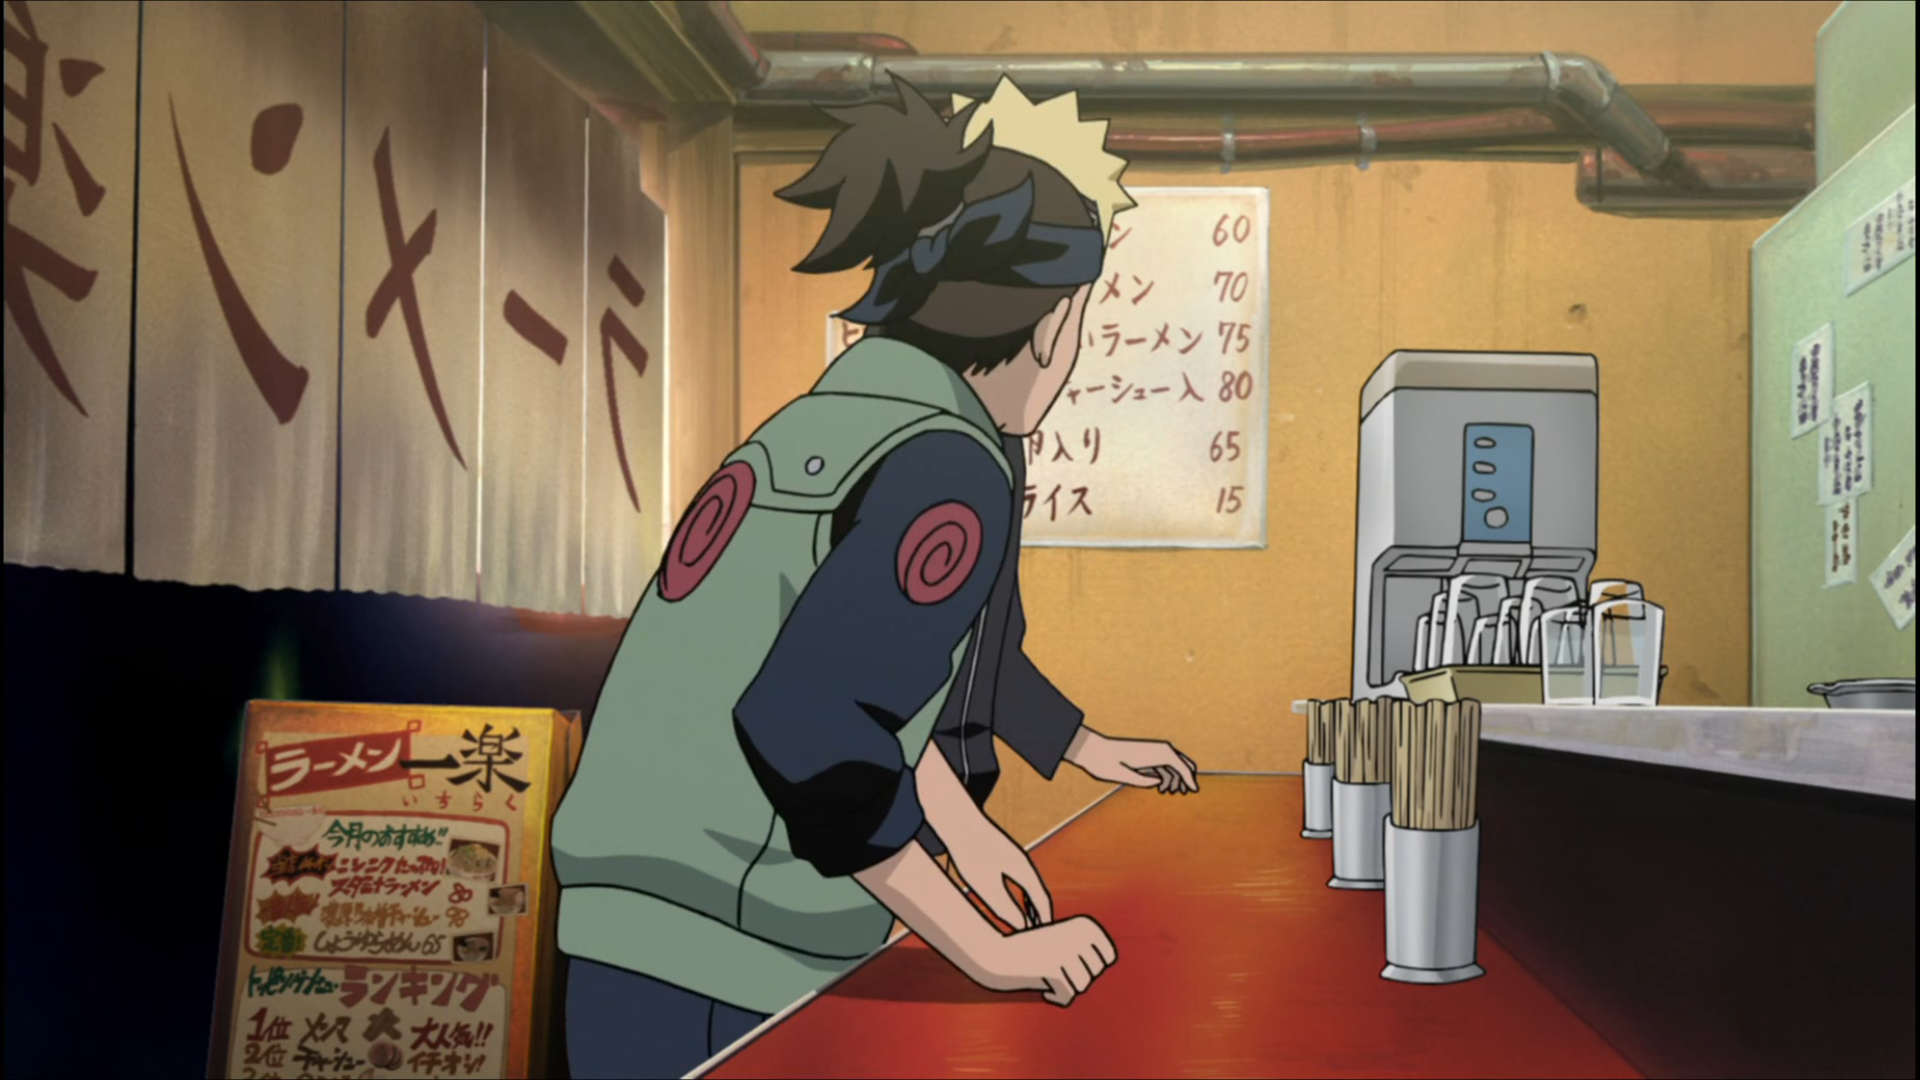 Assistir todos os episodios de Boruto: Naruto Next Generations online,  Assistir Boruto episódio 155: Assistir Boruto: Naruto Next Generations -  Episódio 32